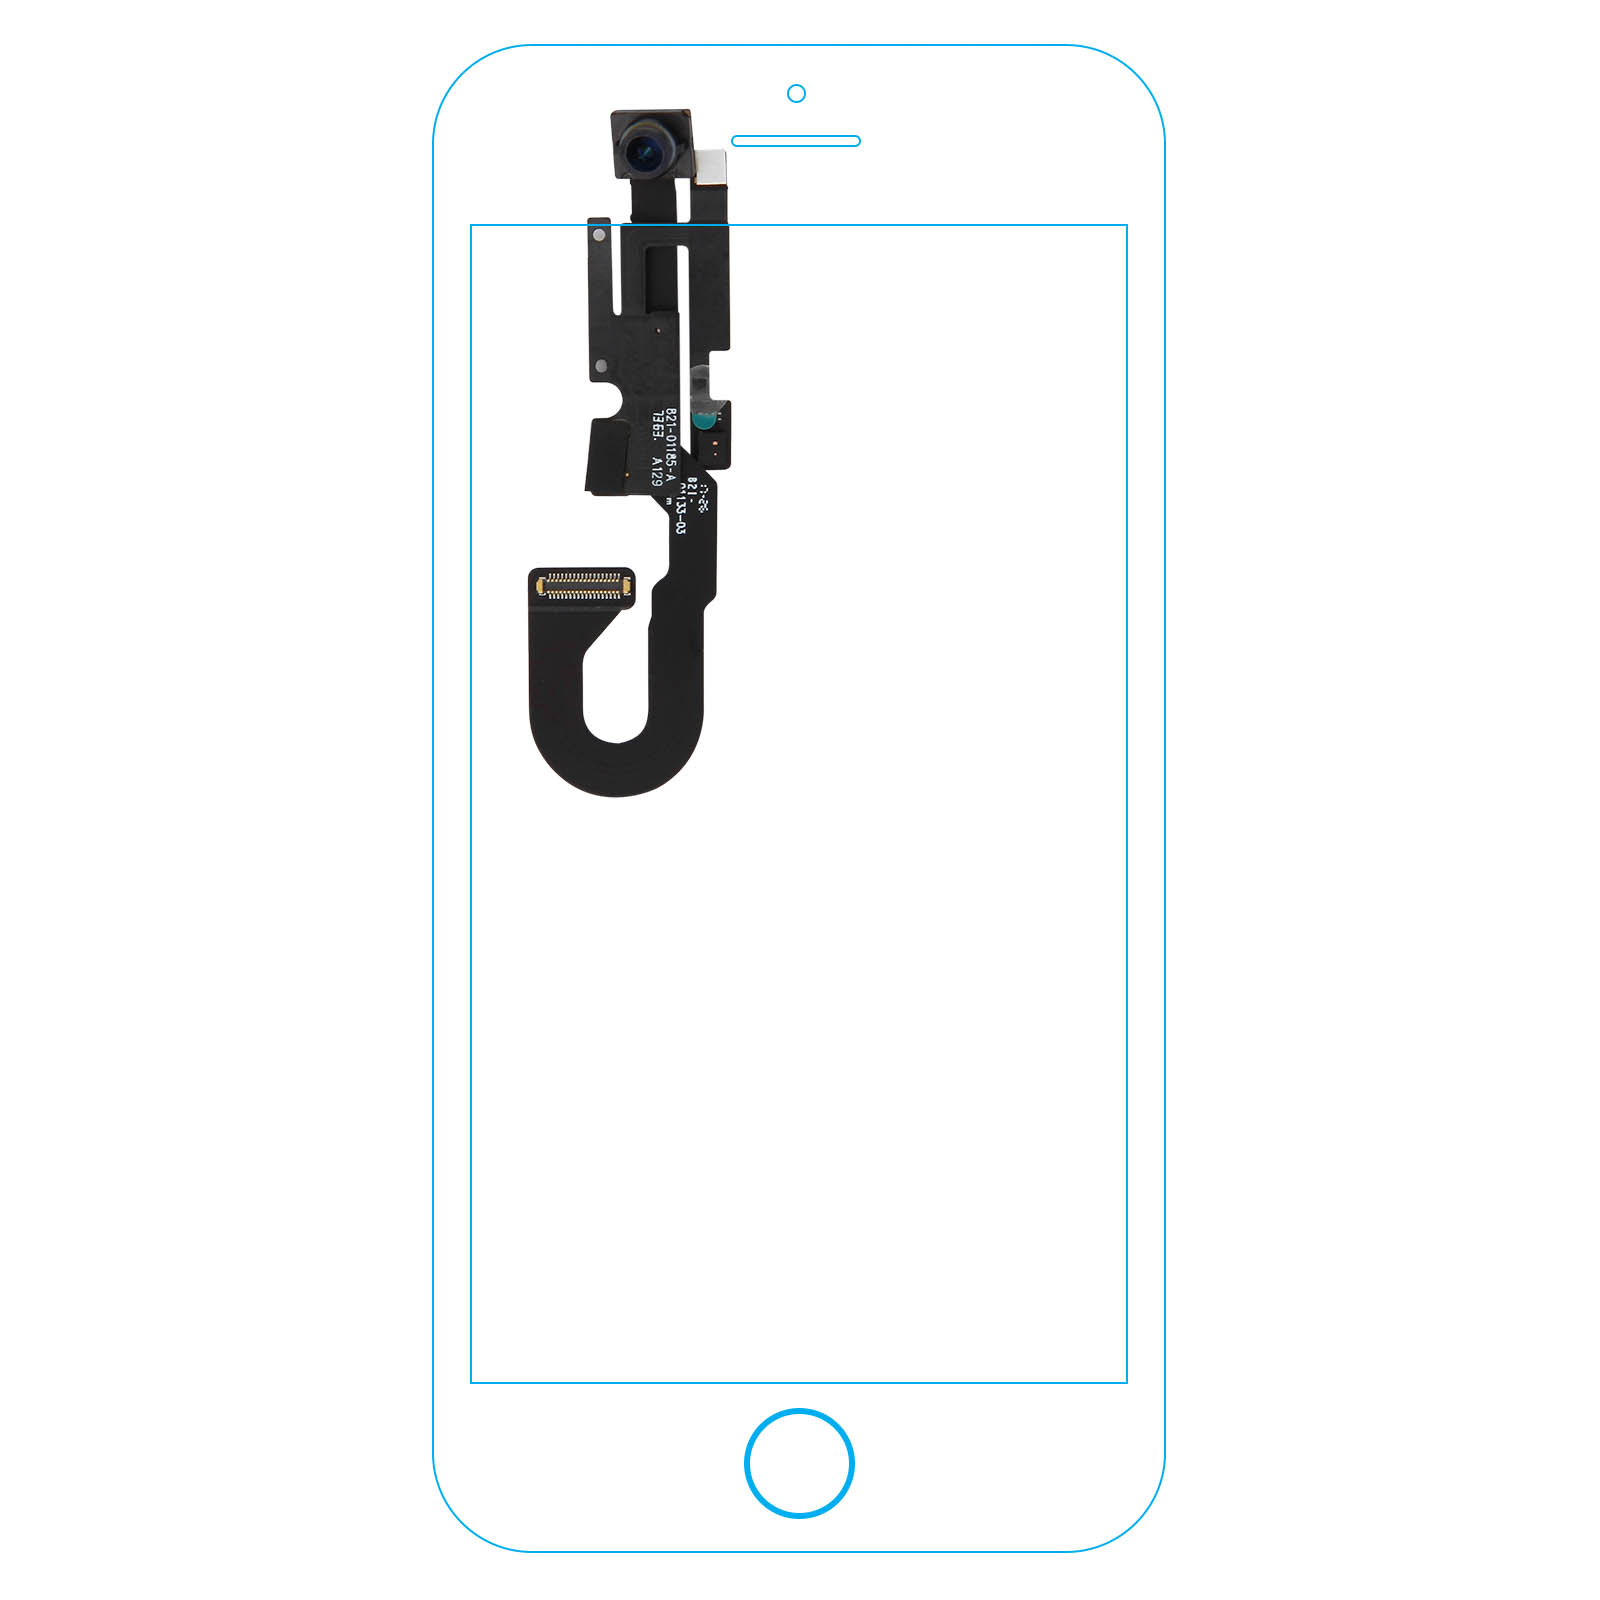 iPhone 8: Apple ajoute une caméra frontale pour la reconnaissance